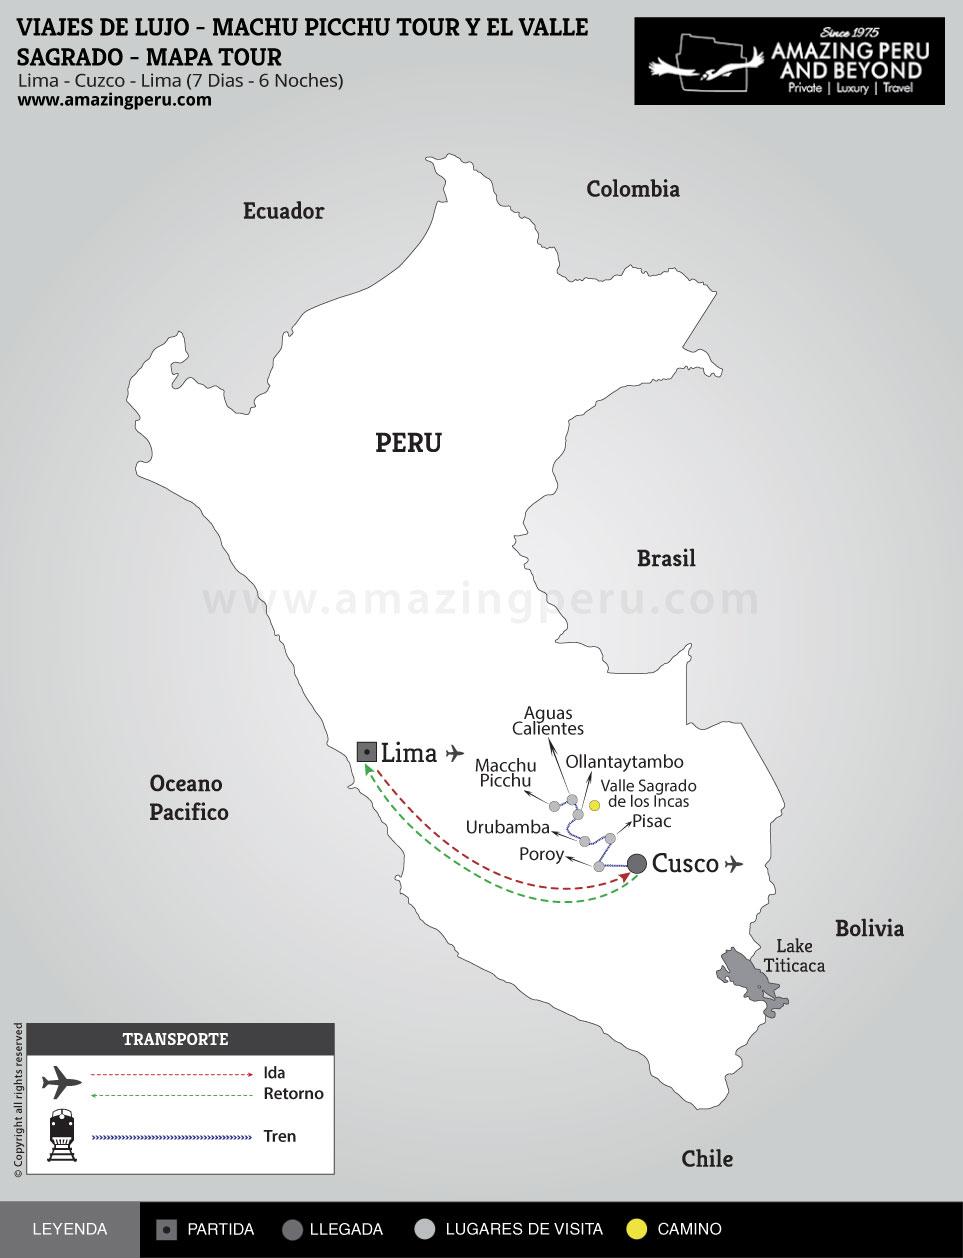 Viajes de Lujo Perú: Machu Picchu y el Valle Sagrado